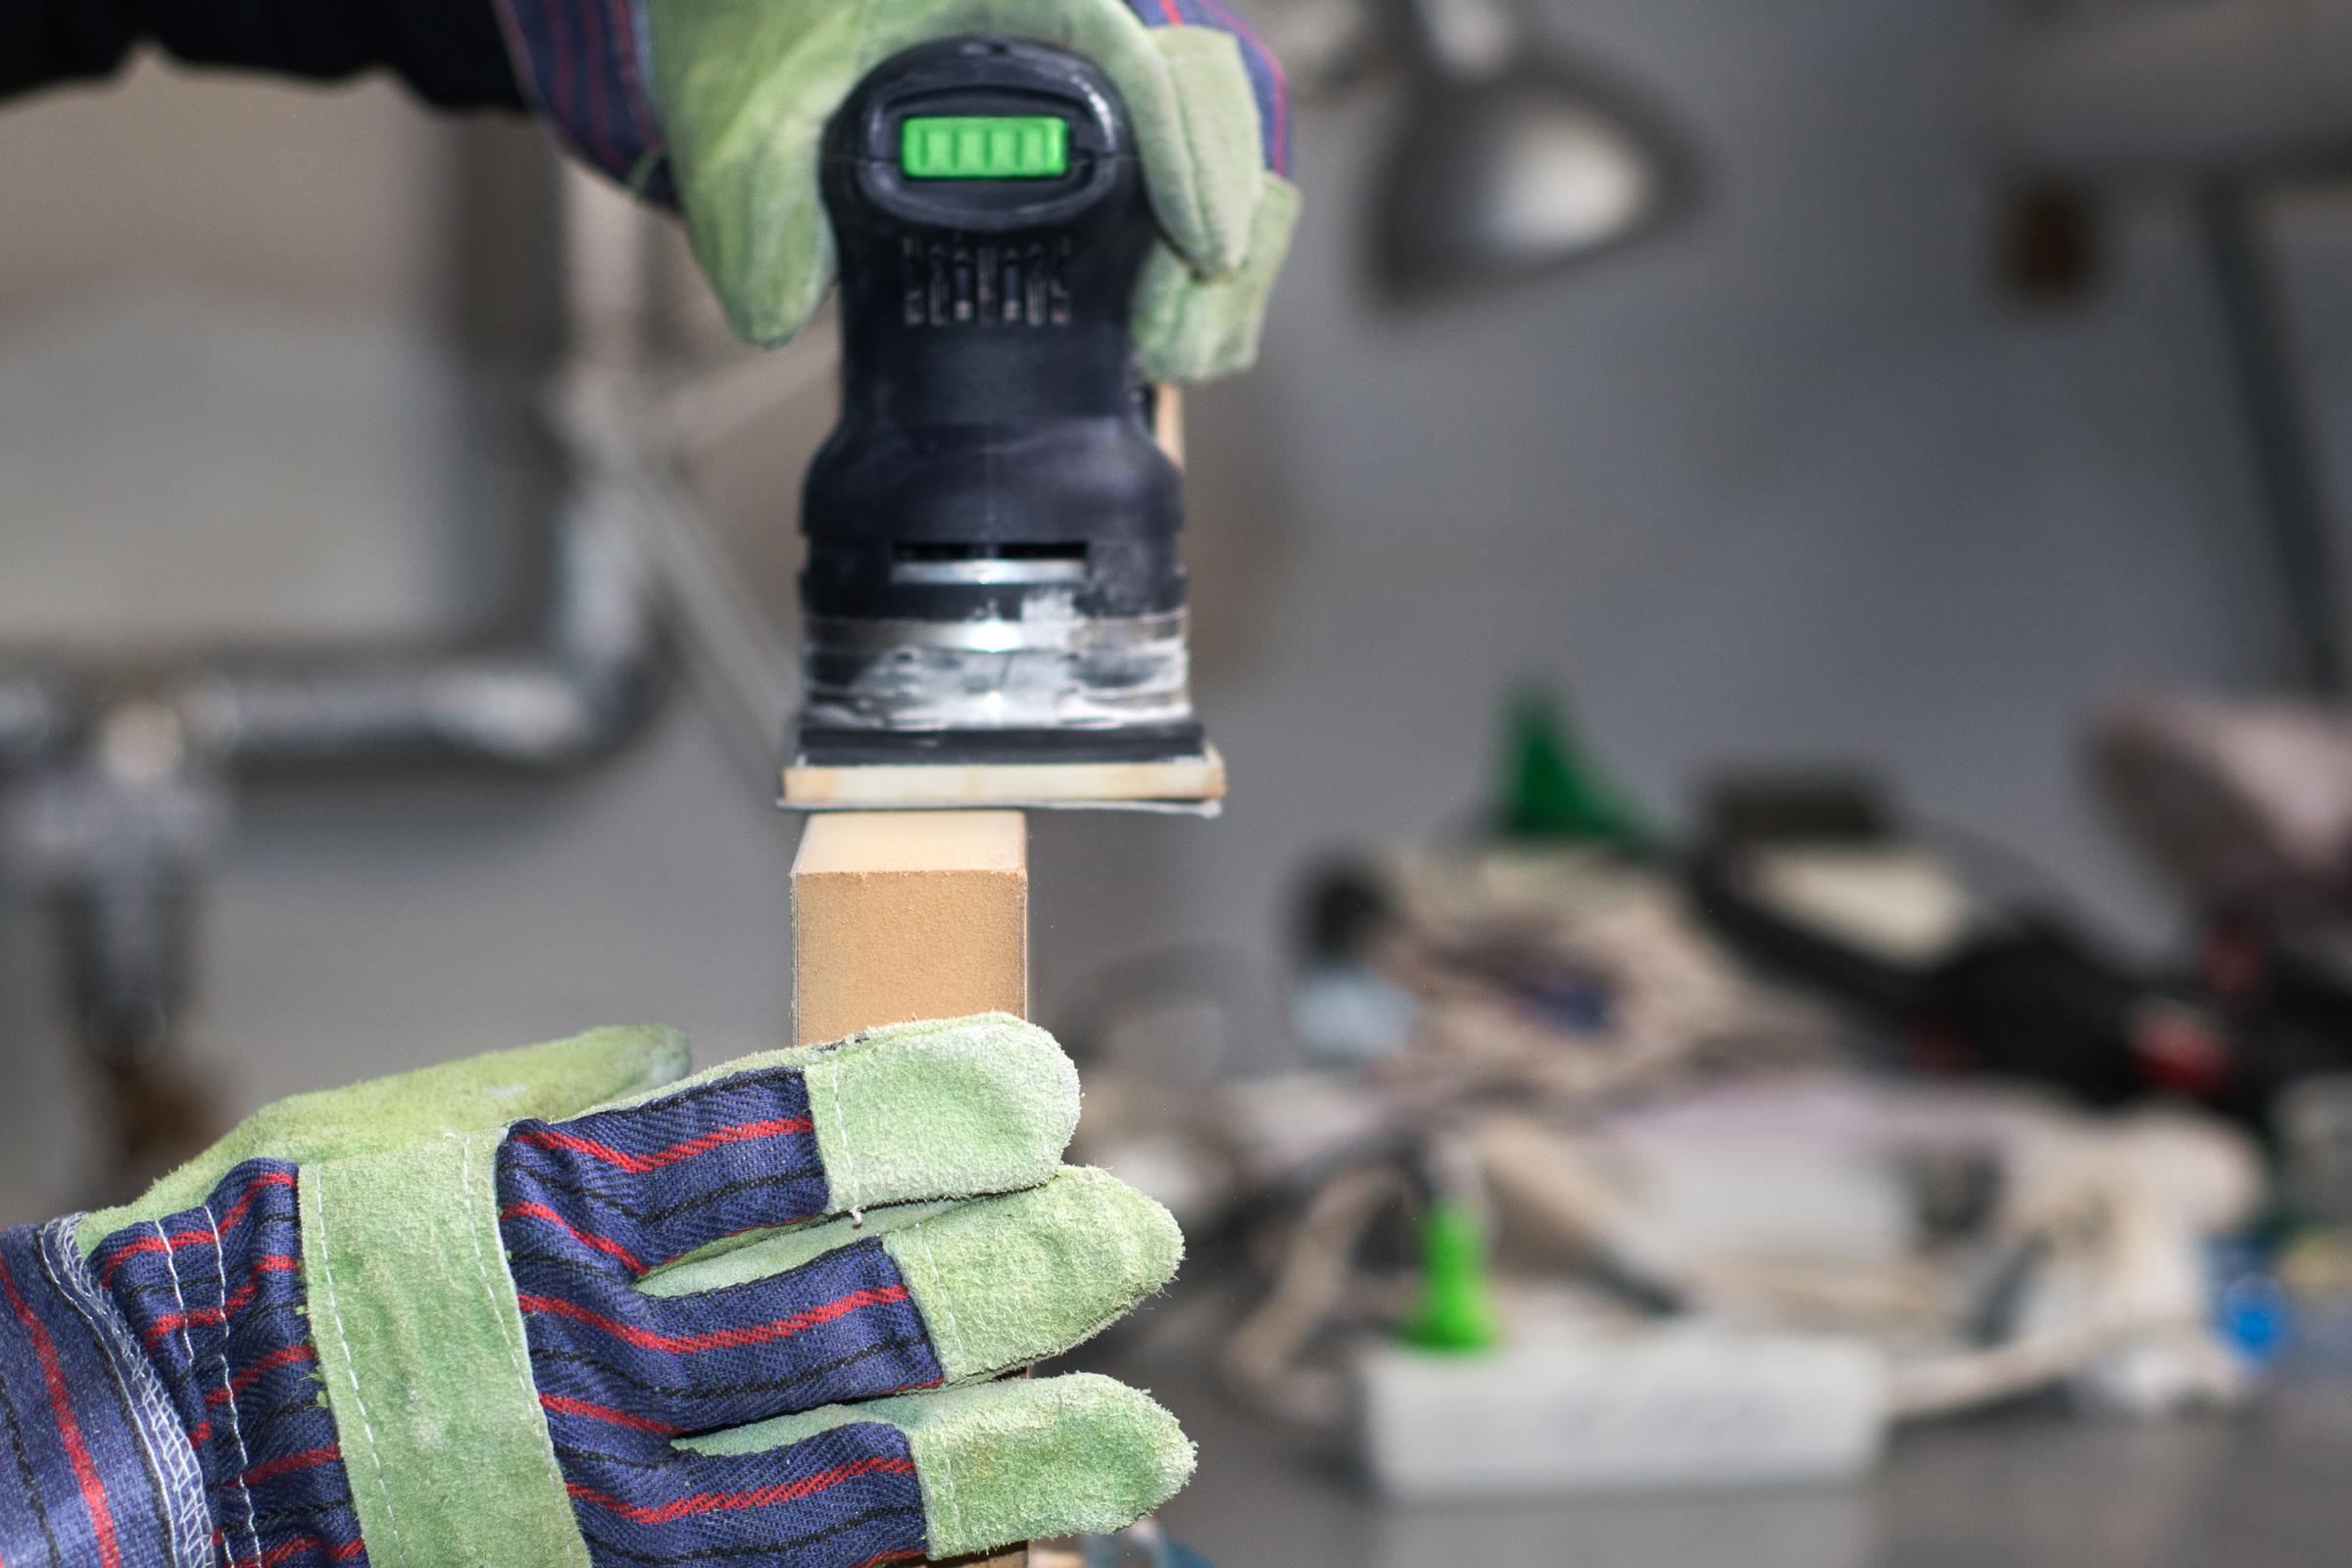 Nahaufnahme in einer Holzwerkstatt: Zwei Hände in Arbeitshandschuhen halten eine Schleifmaschine und bearbeiten damit ein Stück Holz